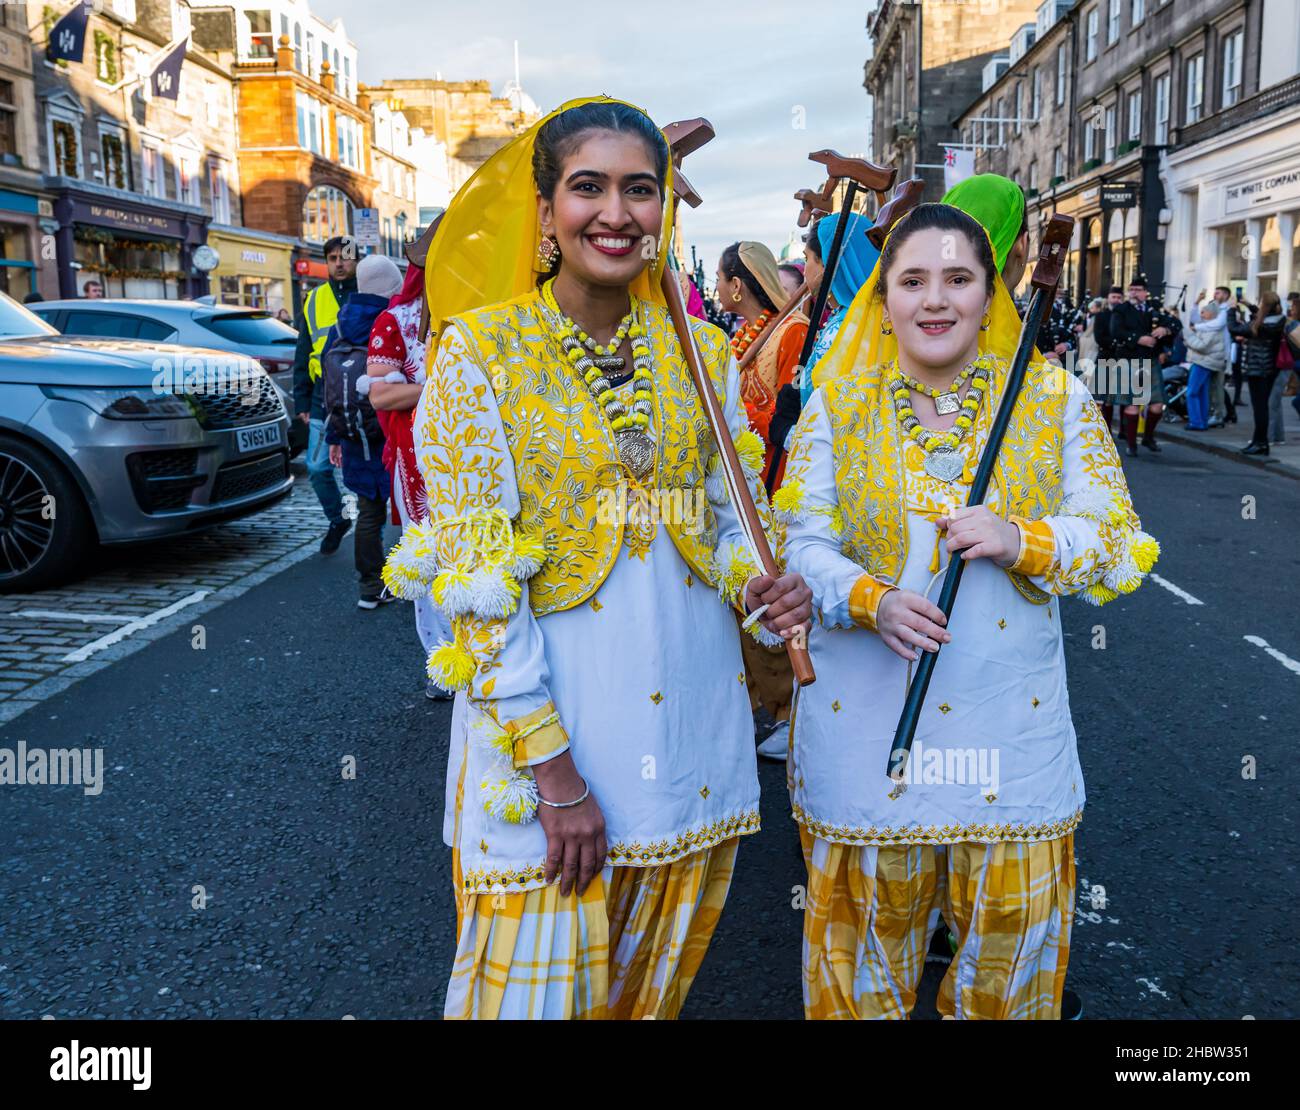 Danseuses indiennes, festival Diwali, Édimbourg, Écosse, Royaume-Uni Banque D'Images